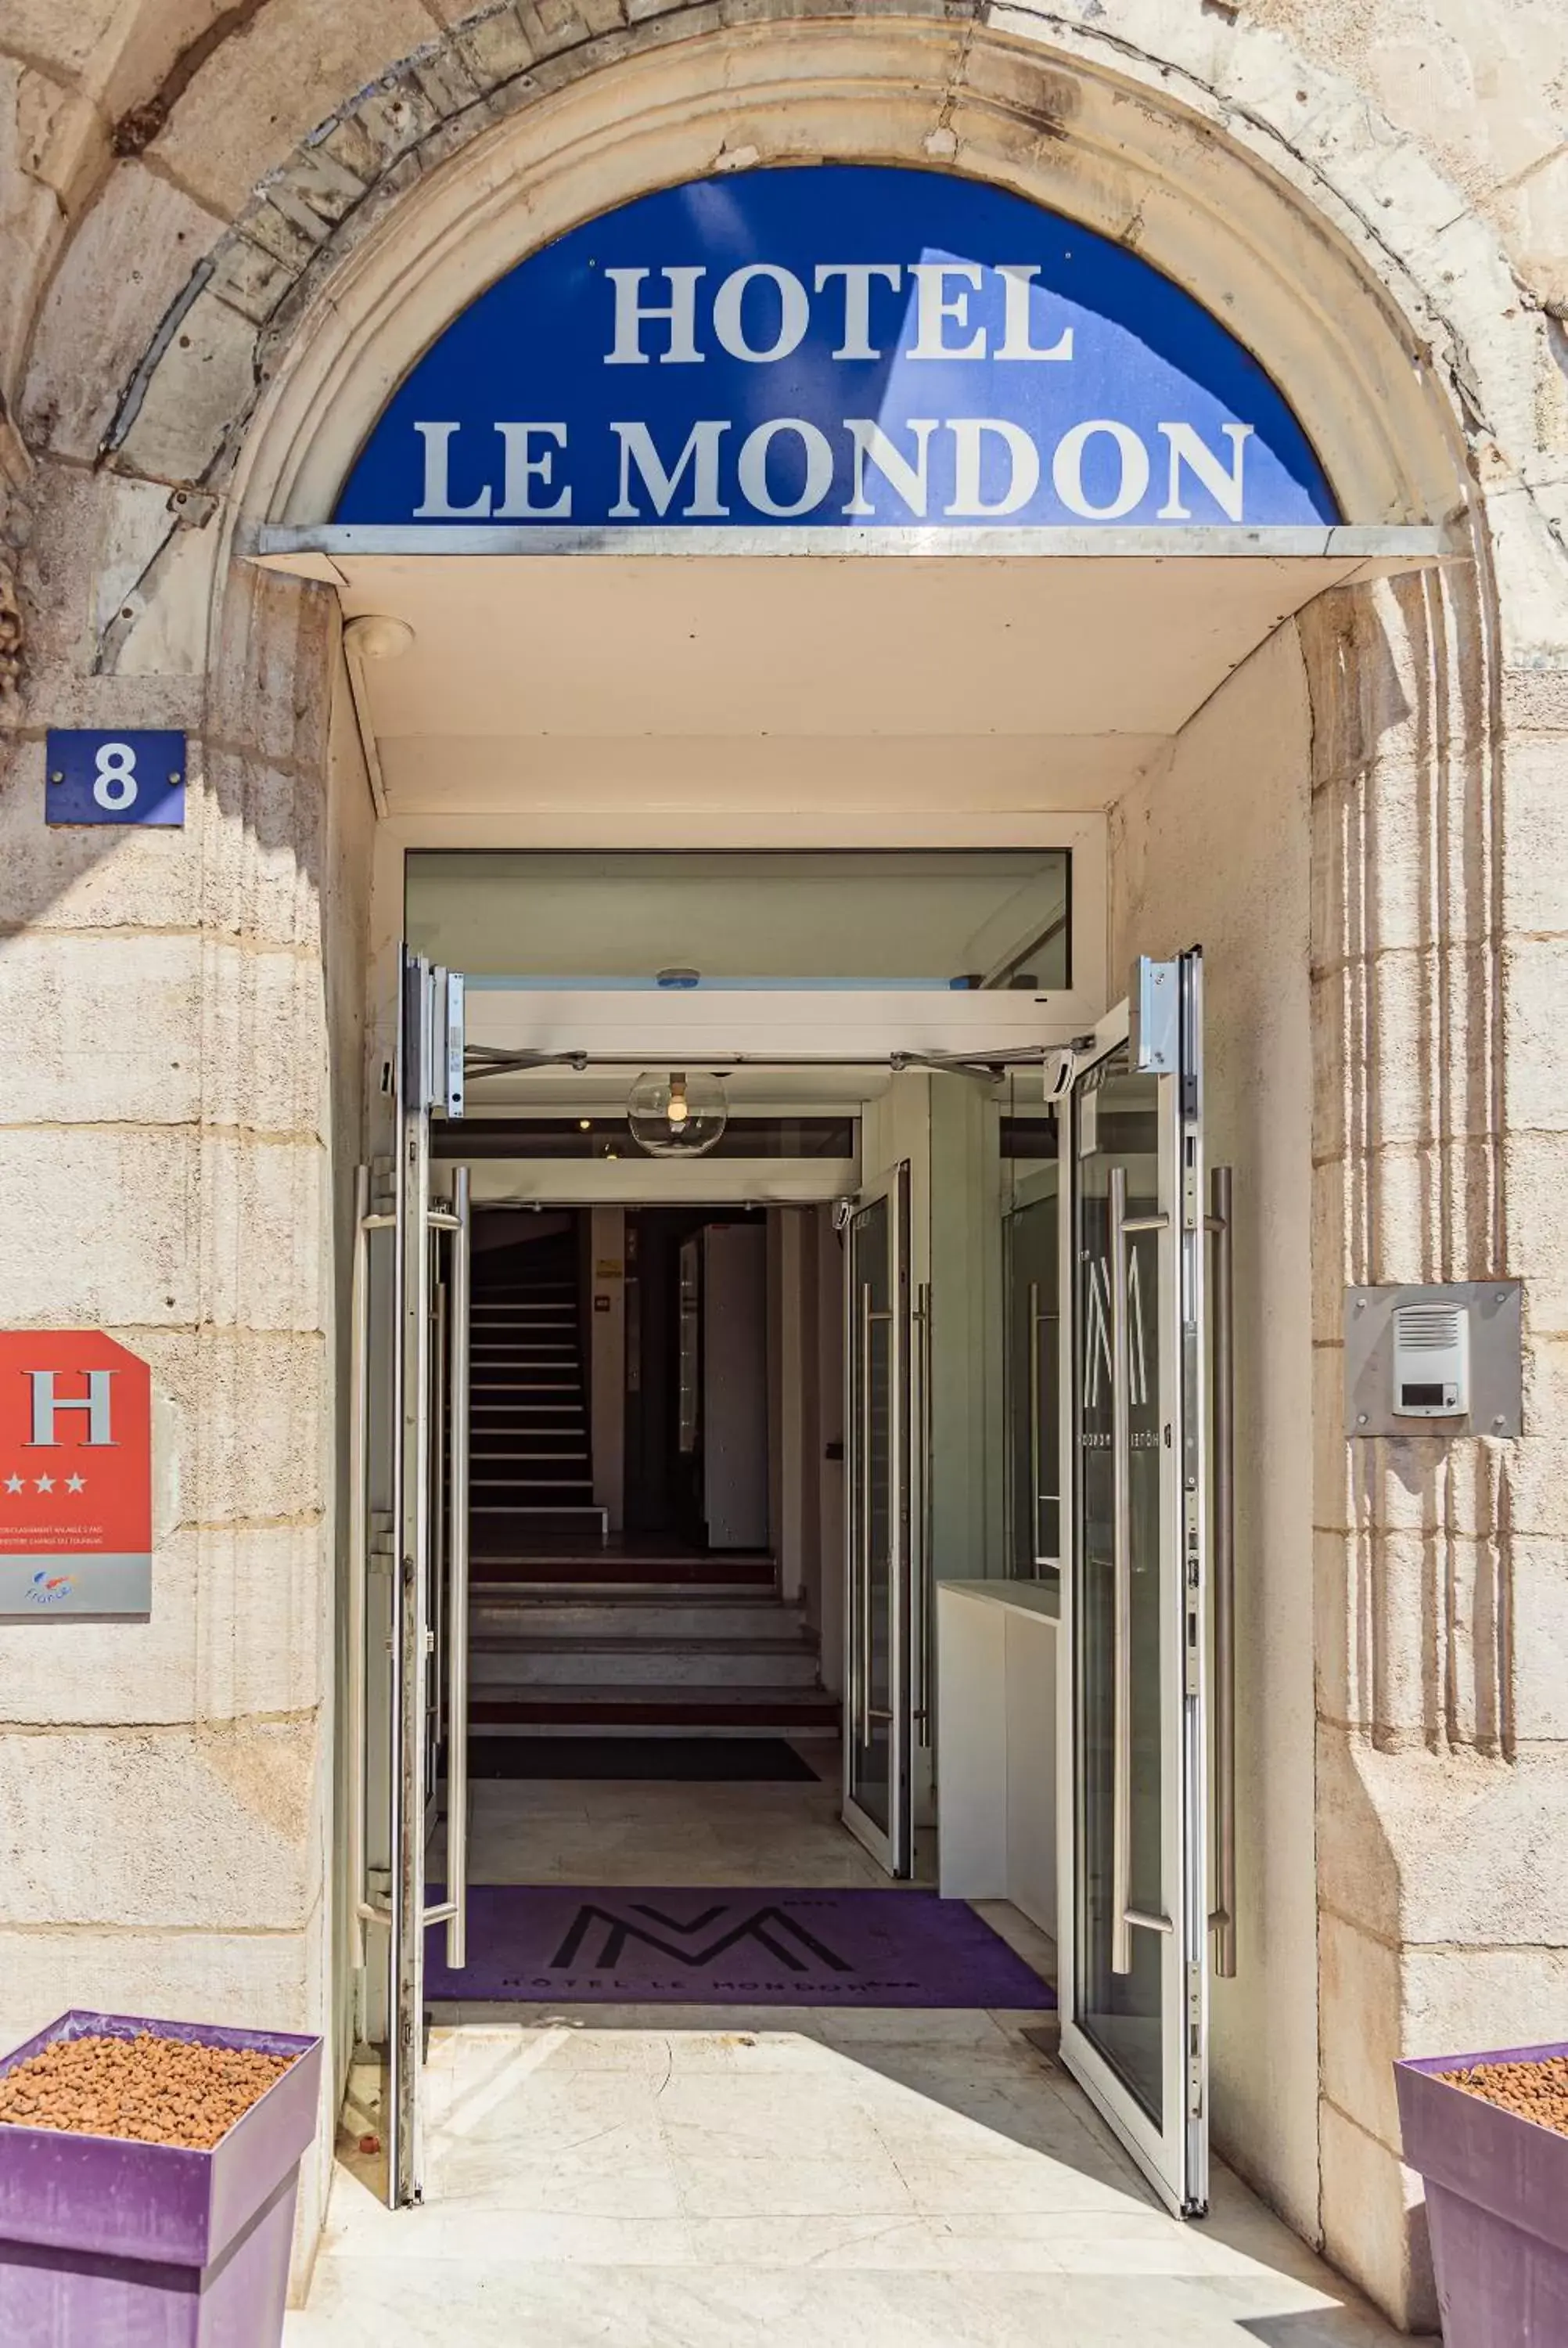 Property building in Hôtel Le Mondon